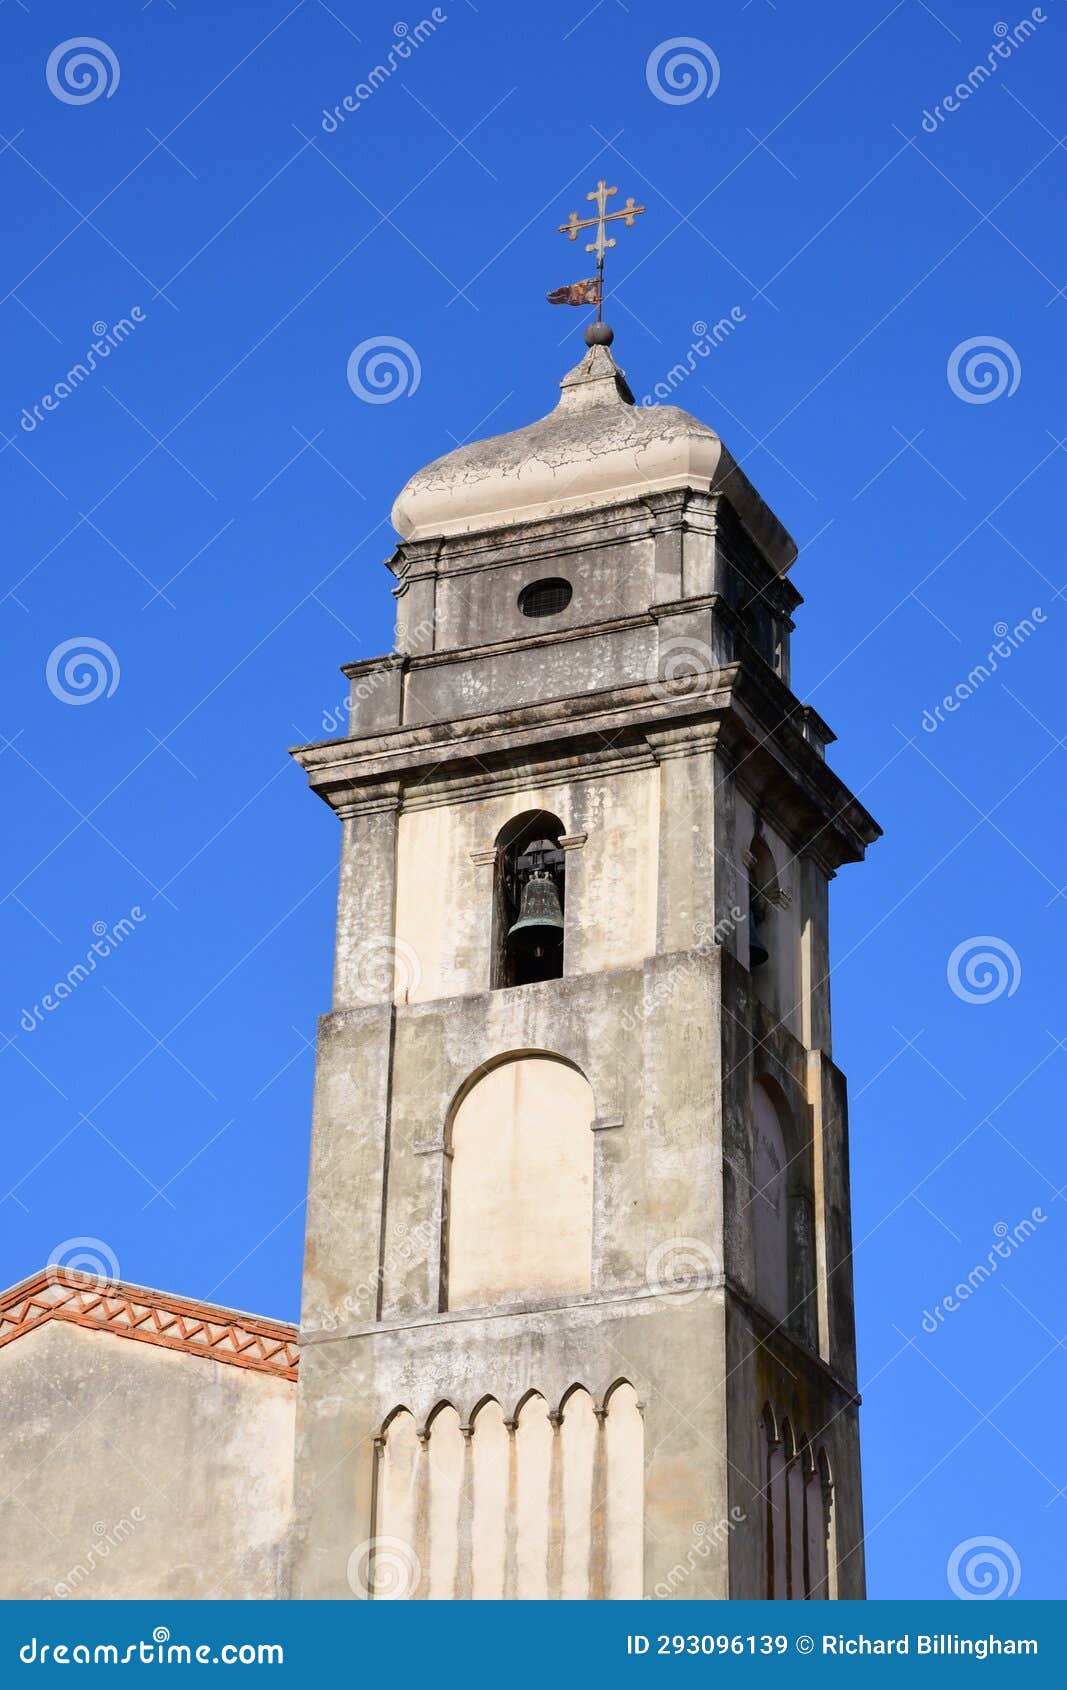 chiesa di sant'antonio abate, pisa, tuscany, italy